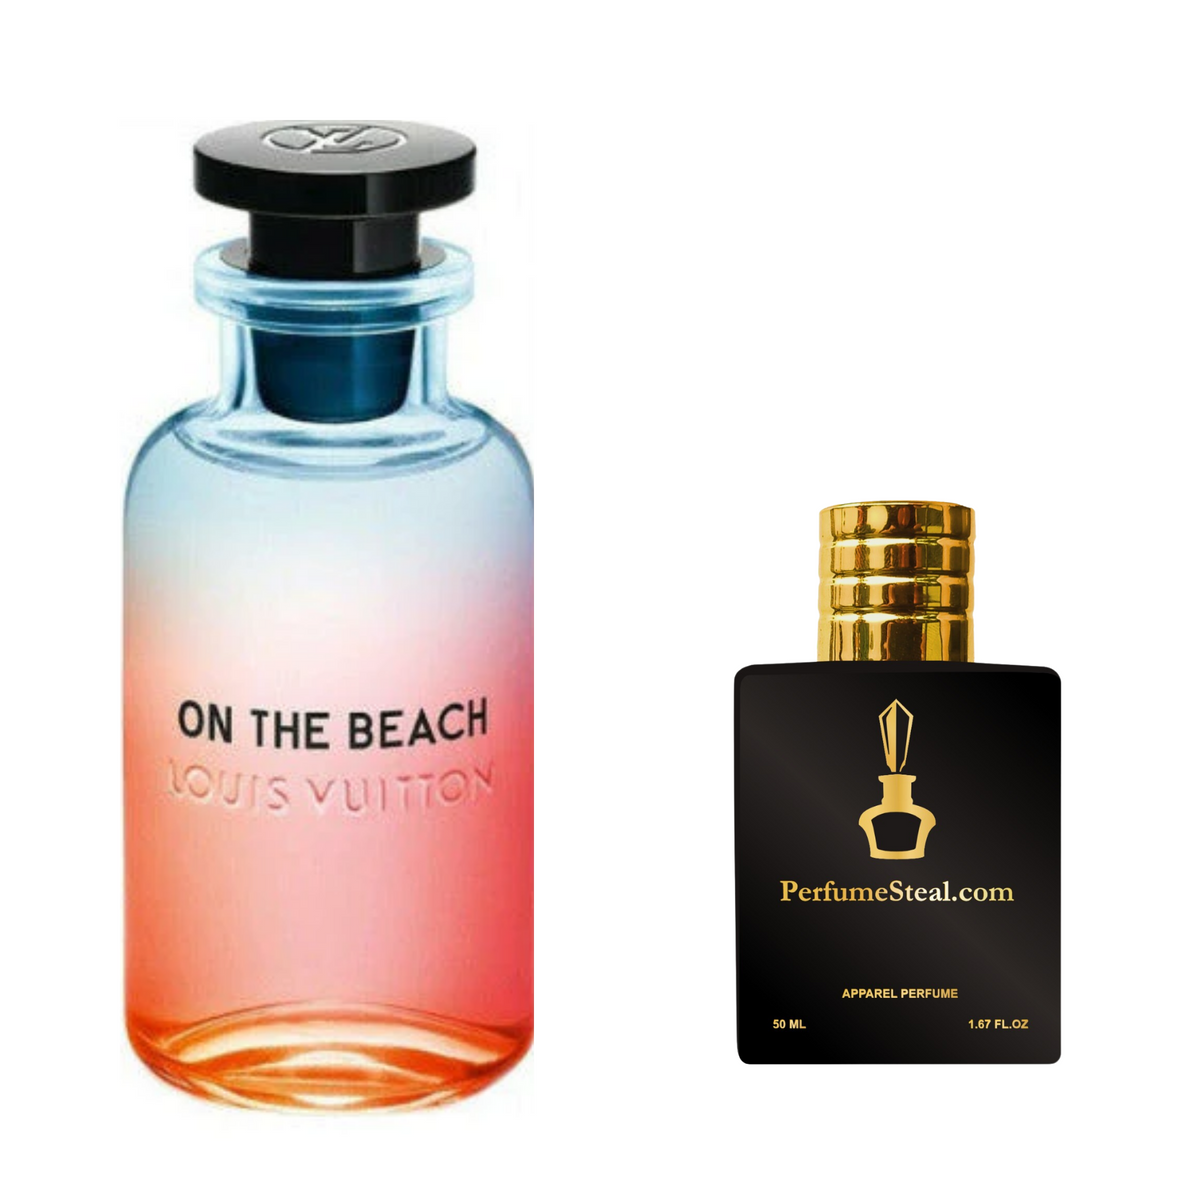 on the beach parfum louis vuittons